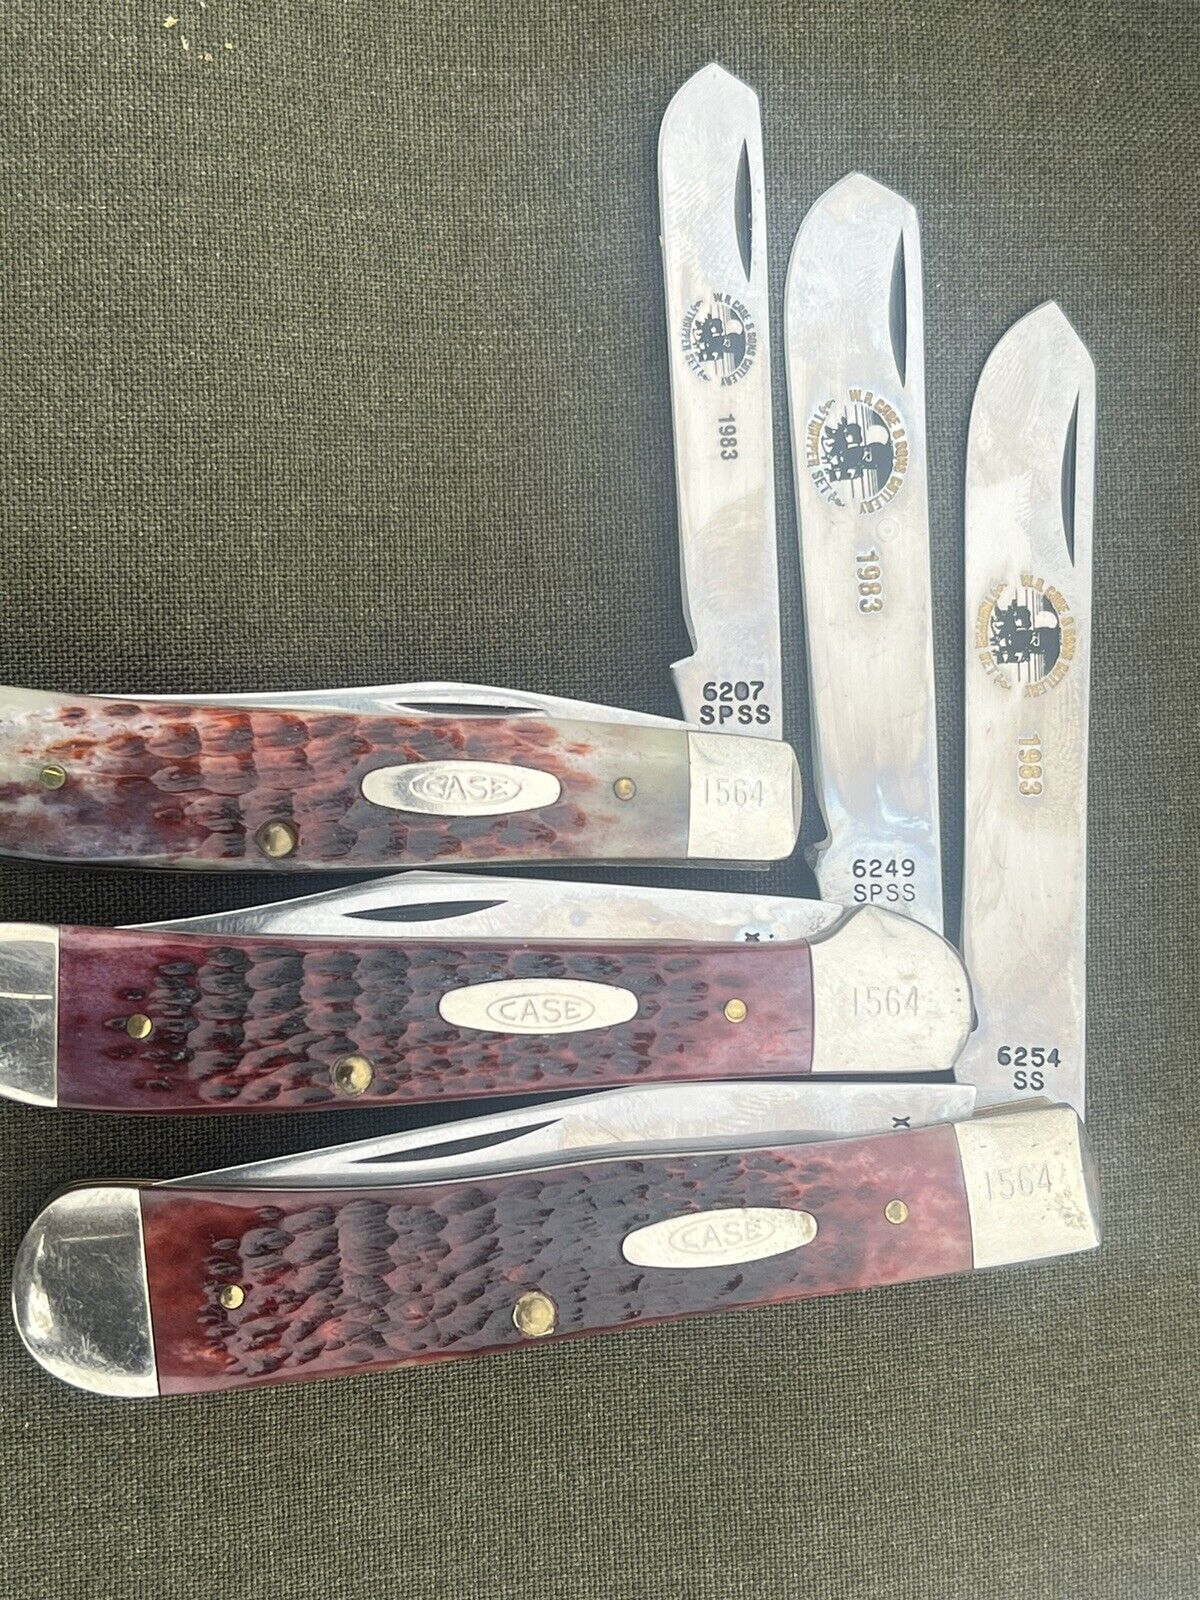 3 Vintage  1983 Trapper Set Case Knives